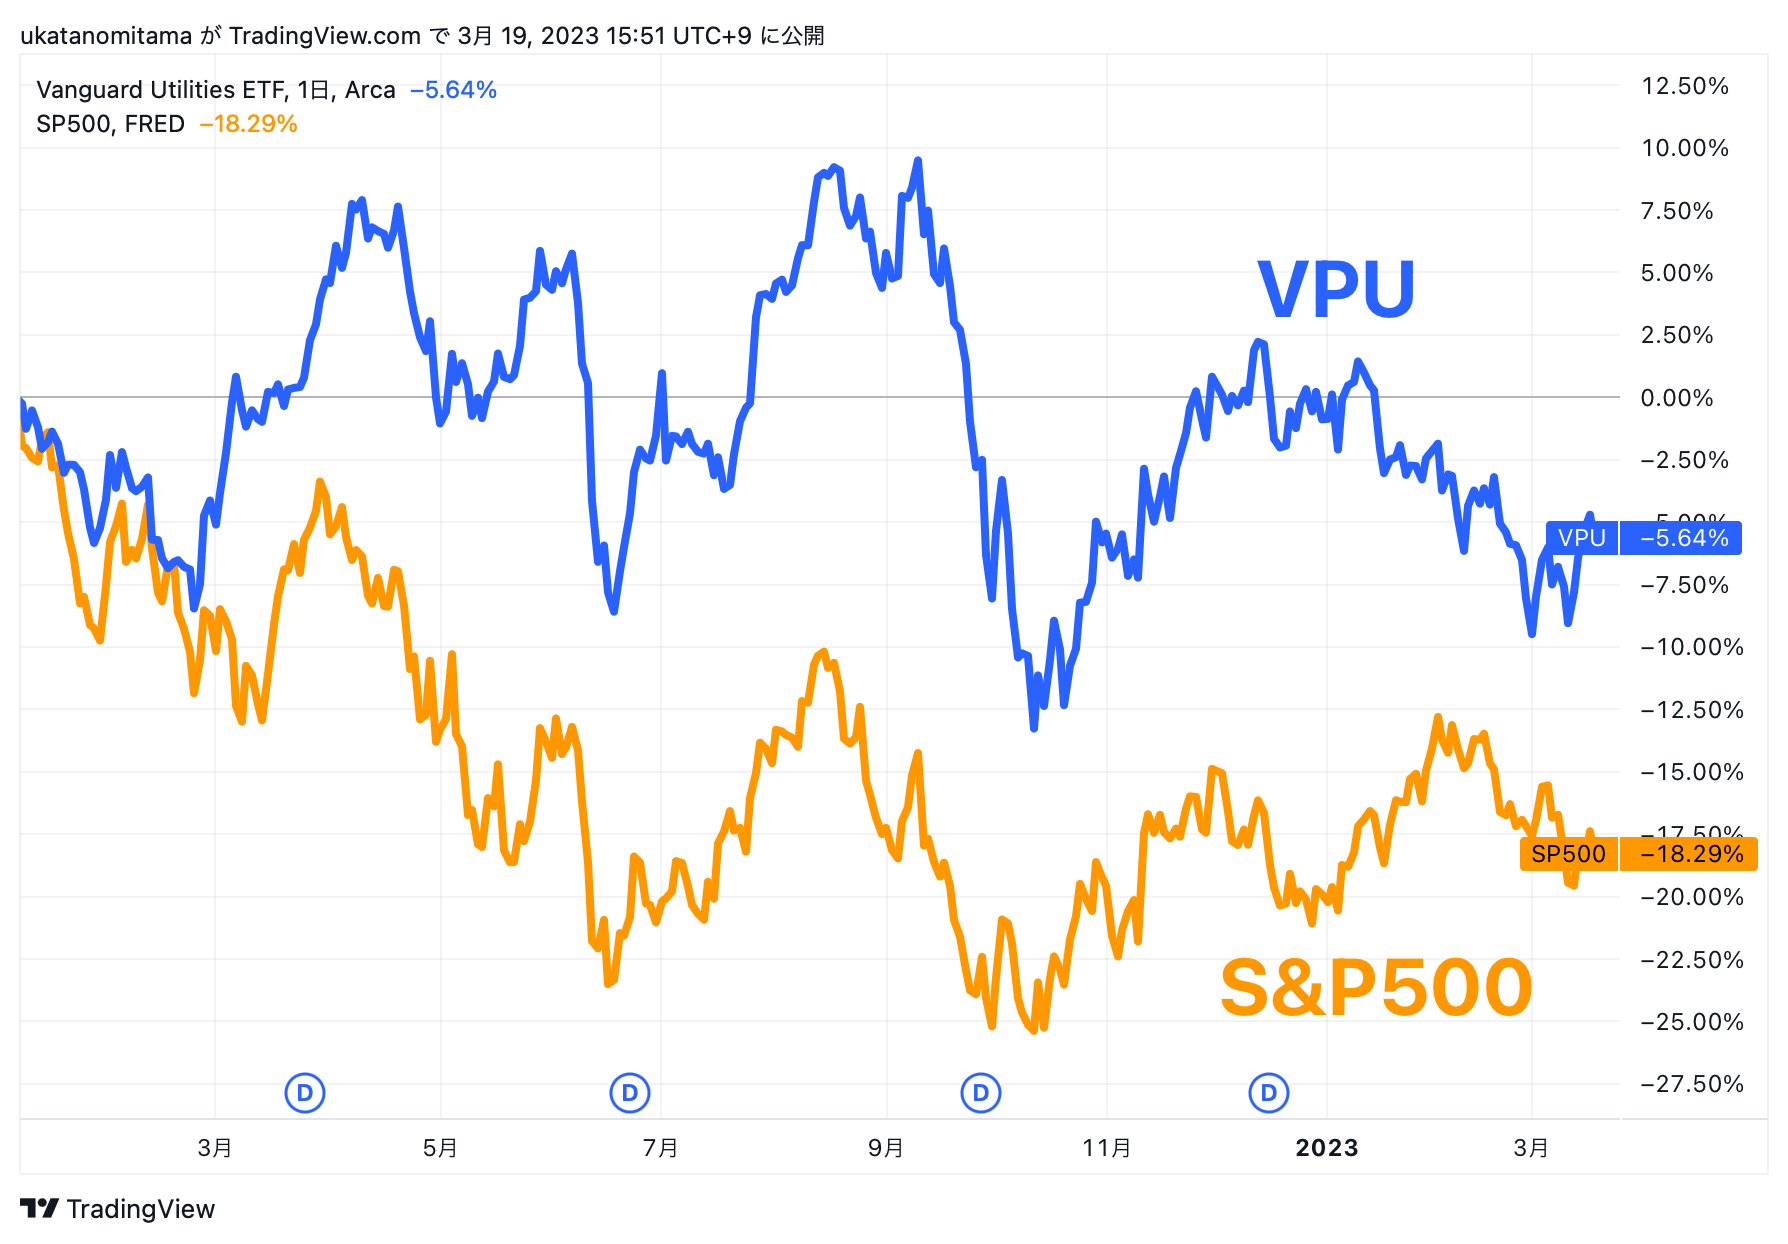 VPU and S&P500